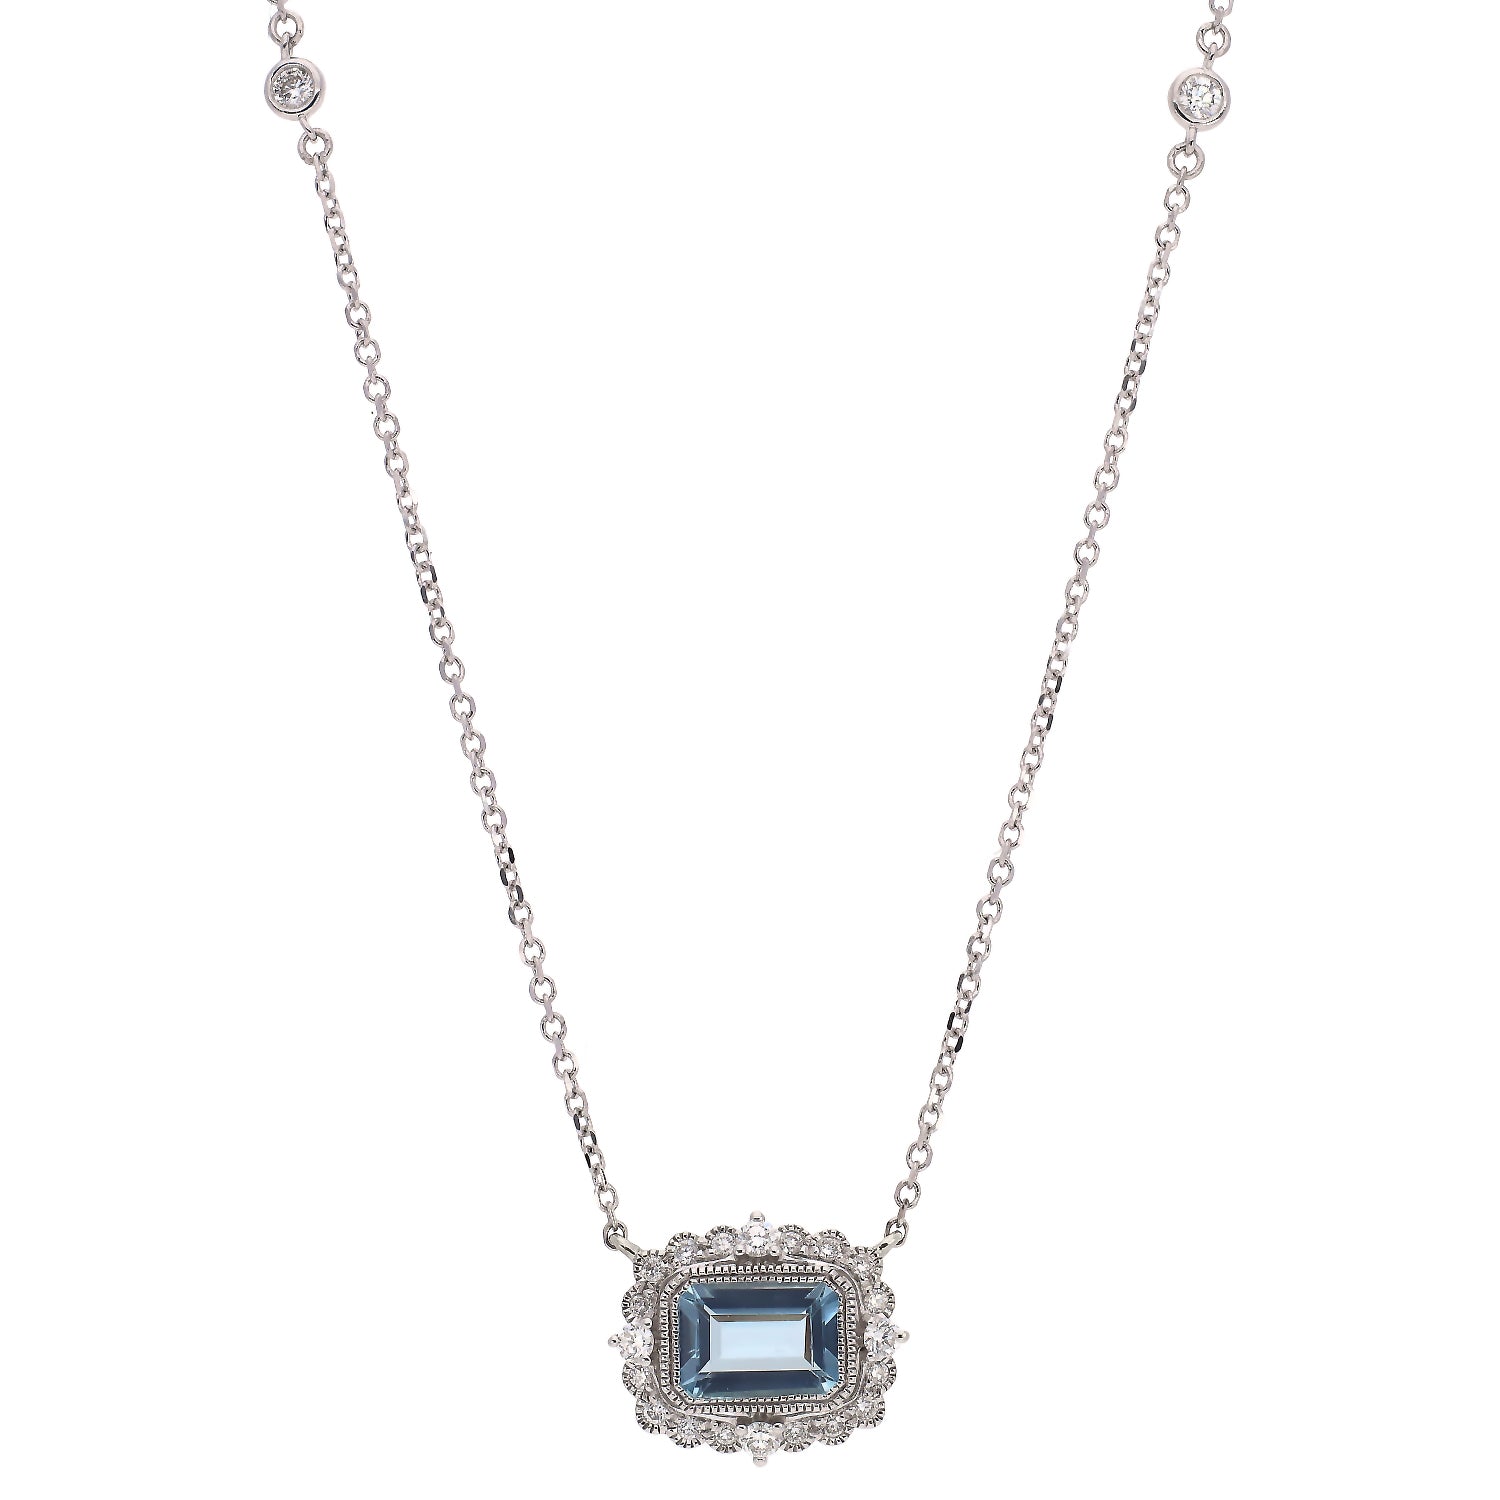 14K White Gold Aquamarine and Diamond Necklace